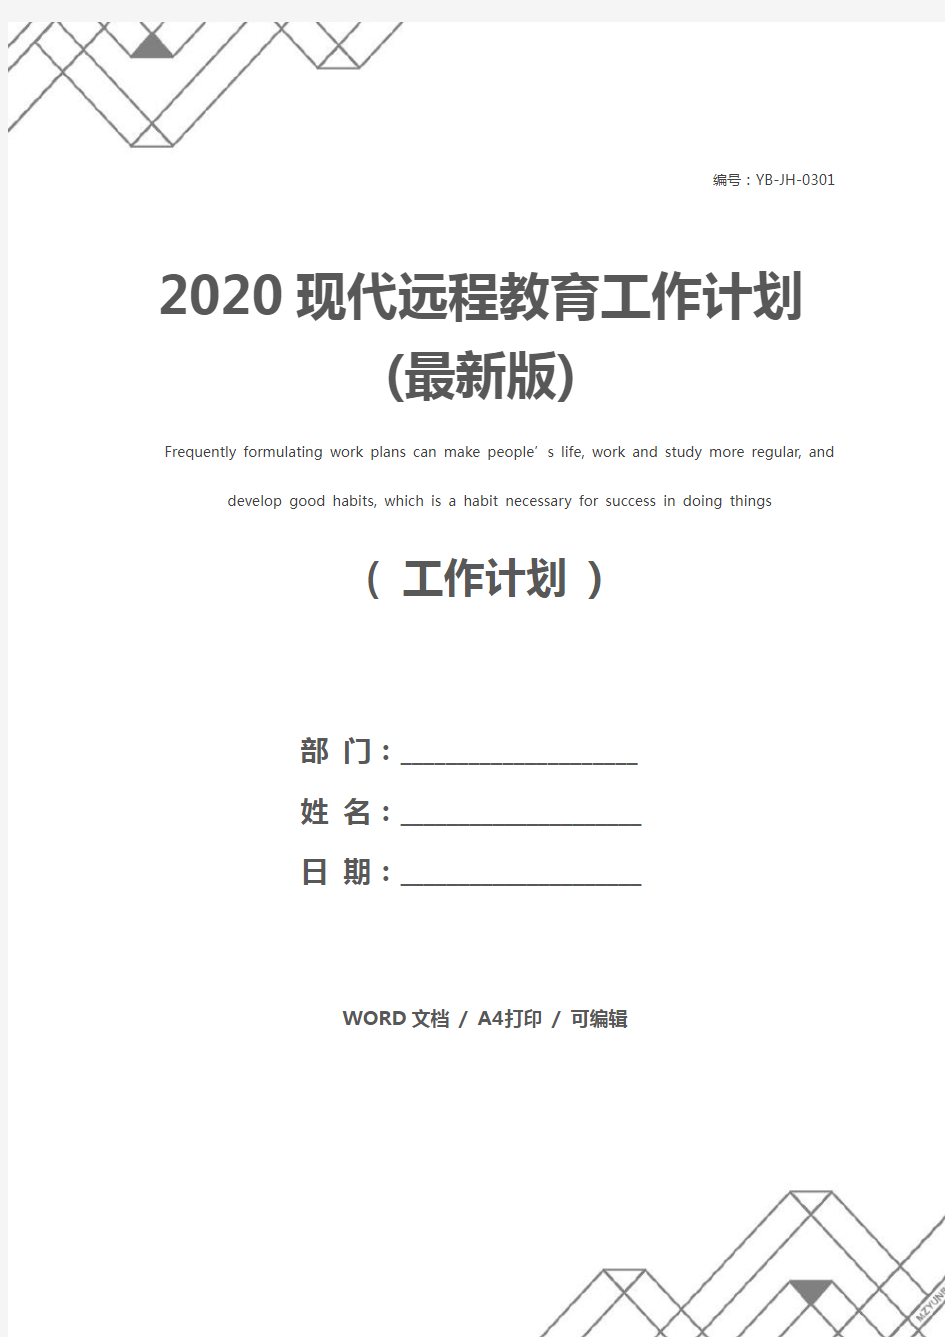 2020现代远程教育工作计划(最新版)